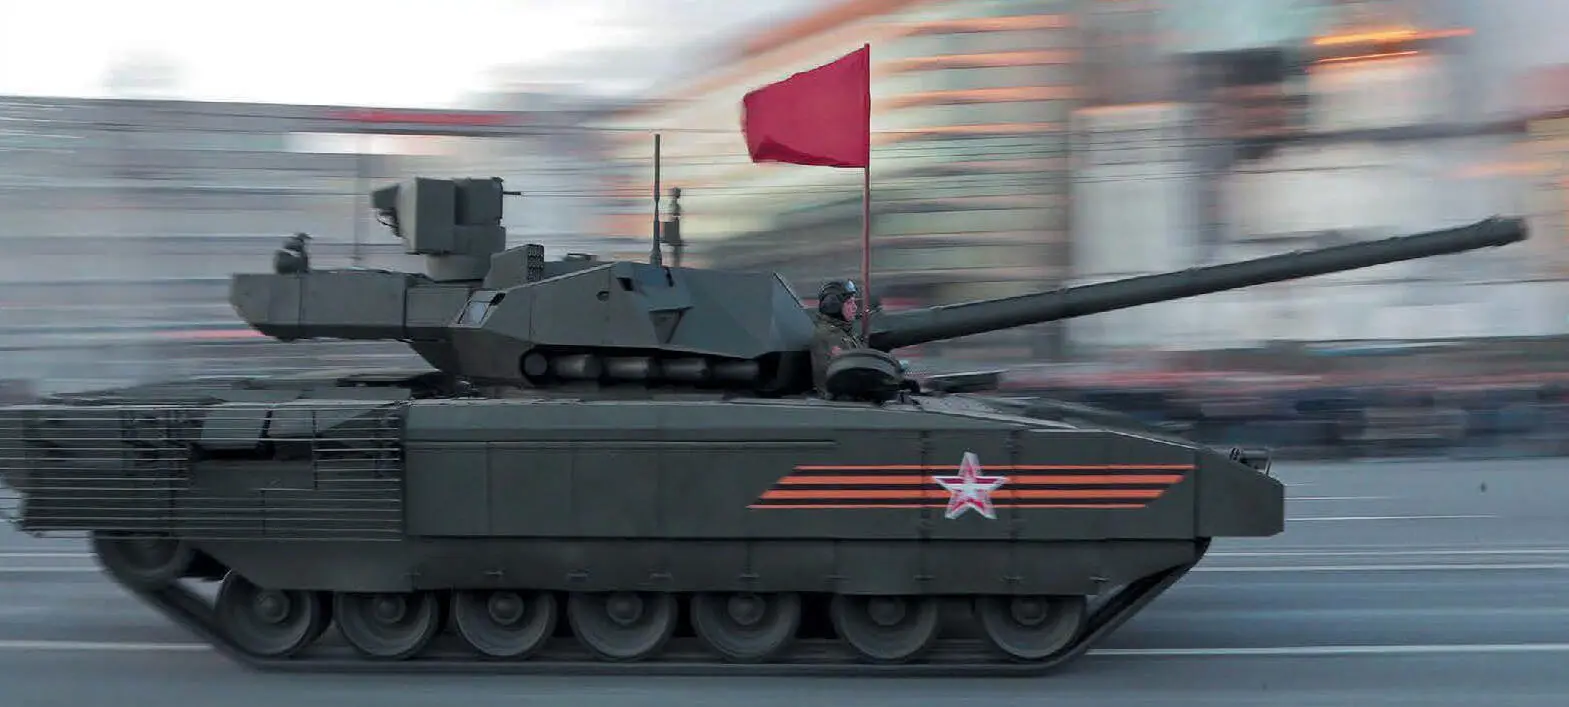 Танк Т14 Армата следует на большой скорости по улице Москвы 4 мая 2015 г - фото 1